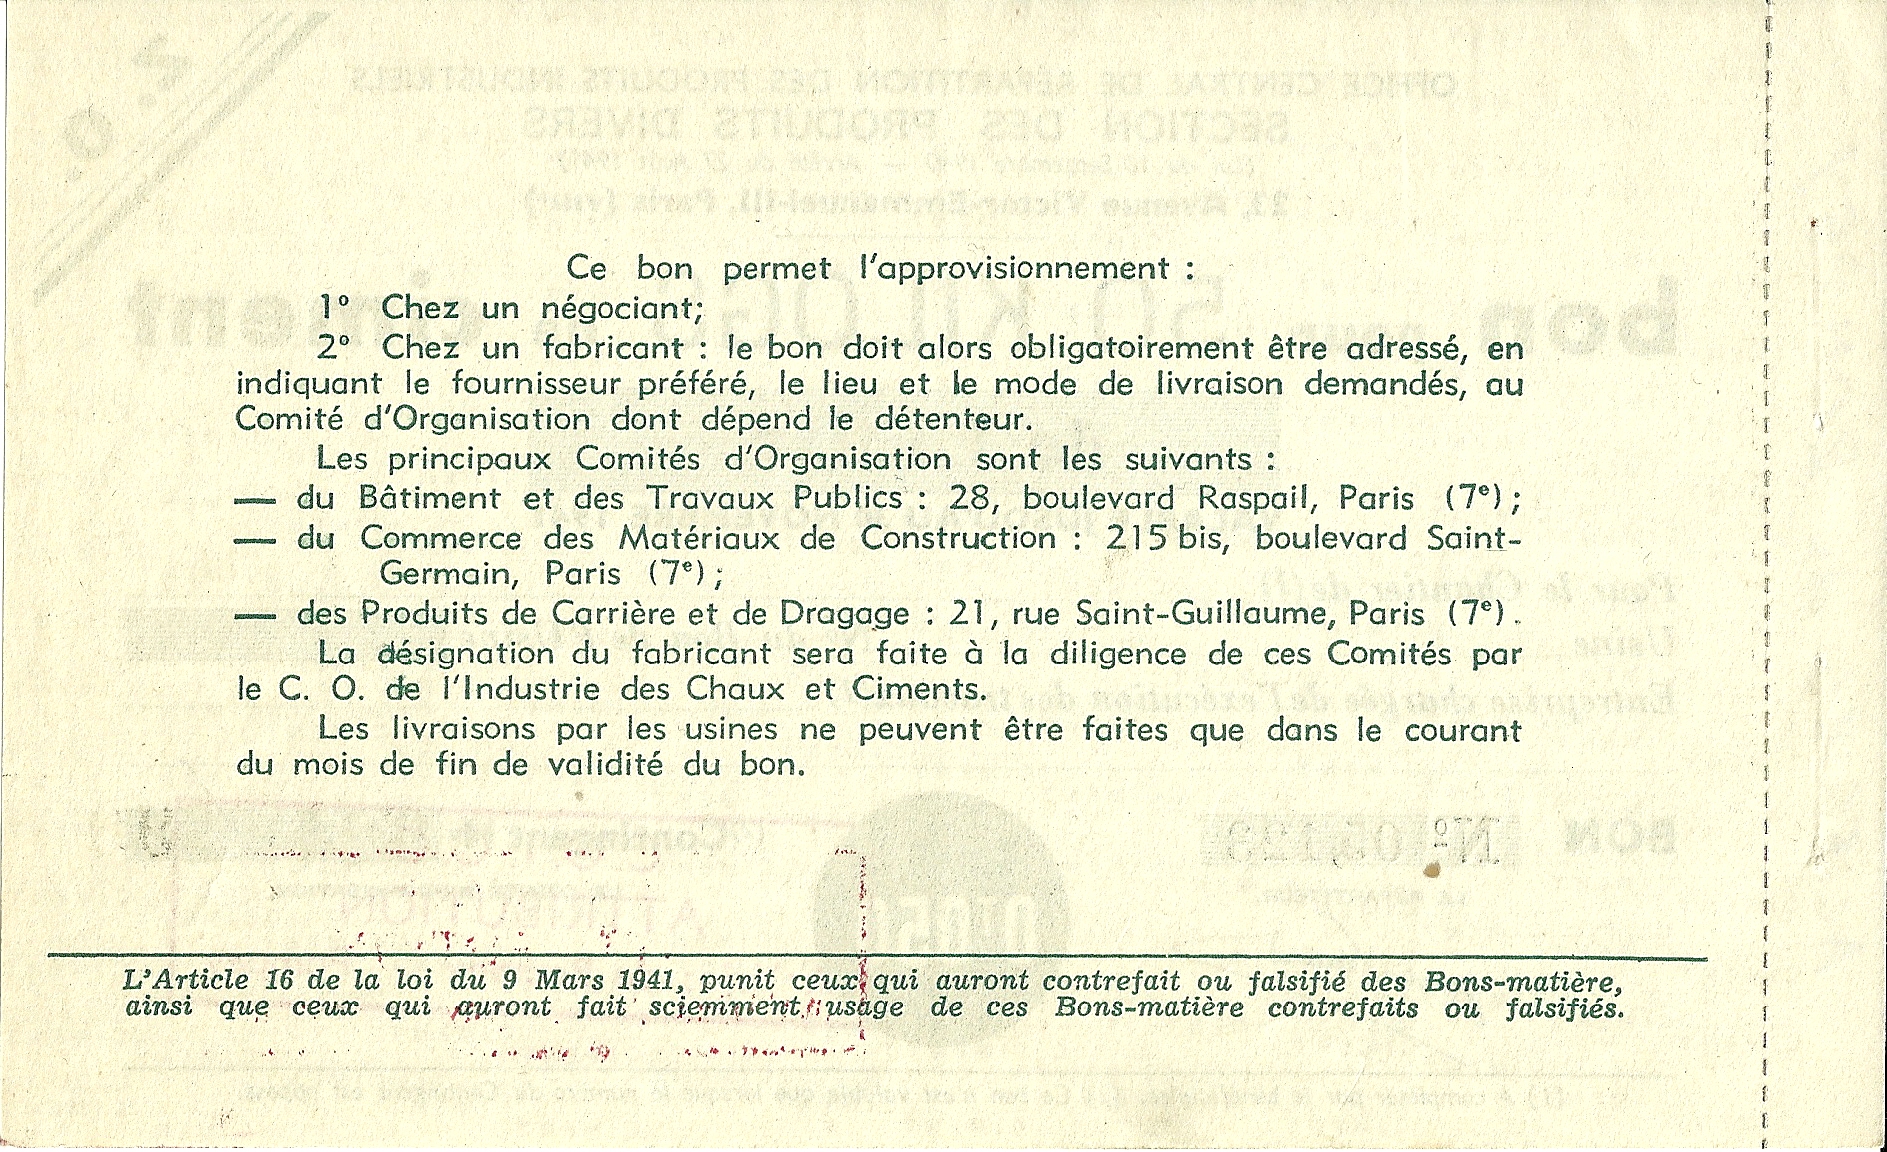 SECTION DES PRODUITS DIVERS - bon pour 50 KILOGS de ciment de Laitier - 05,123 - DOS